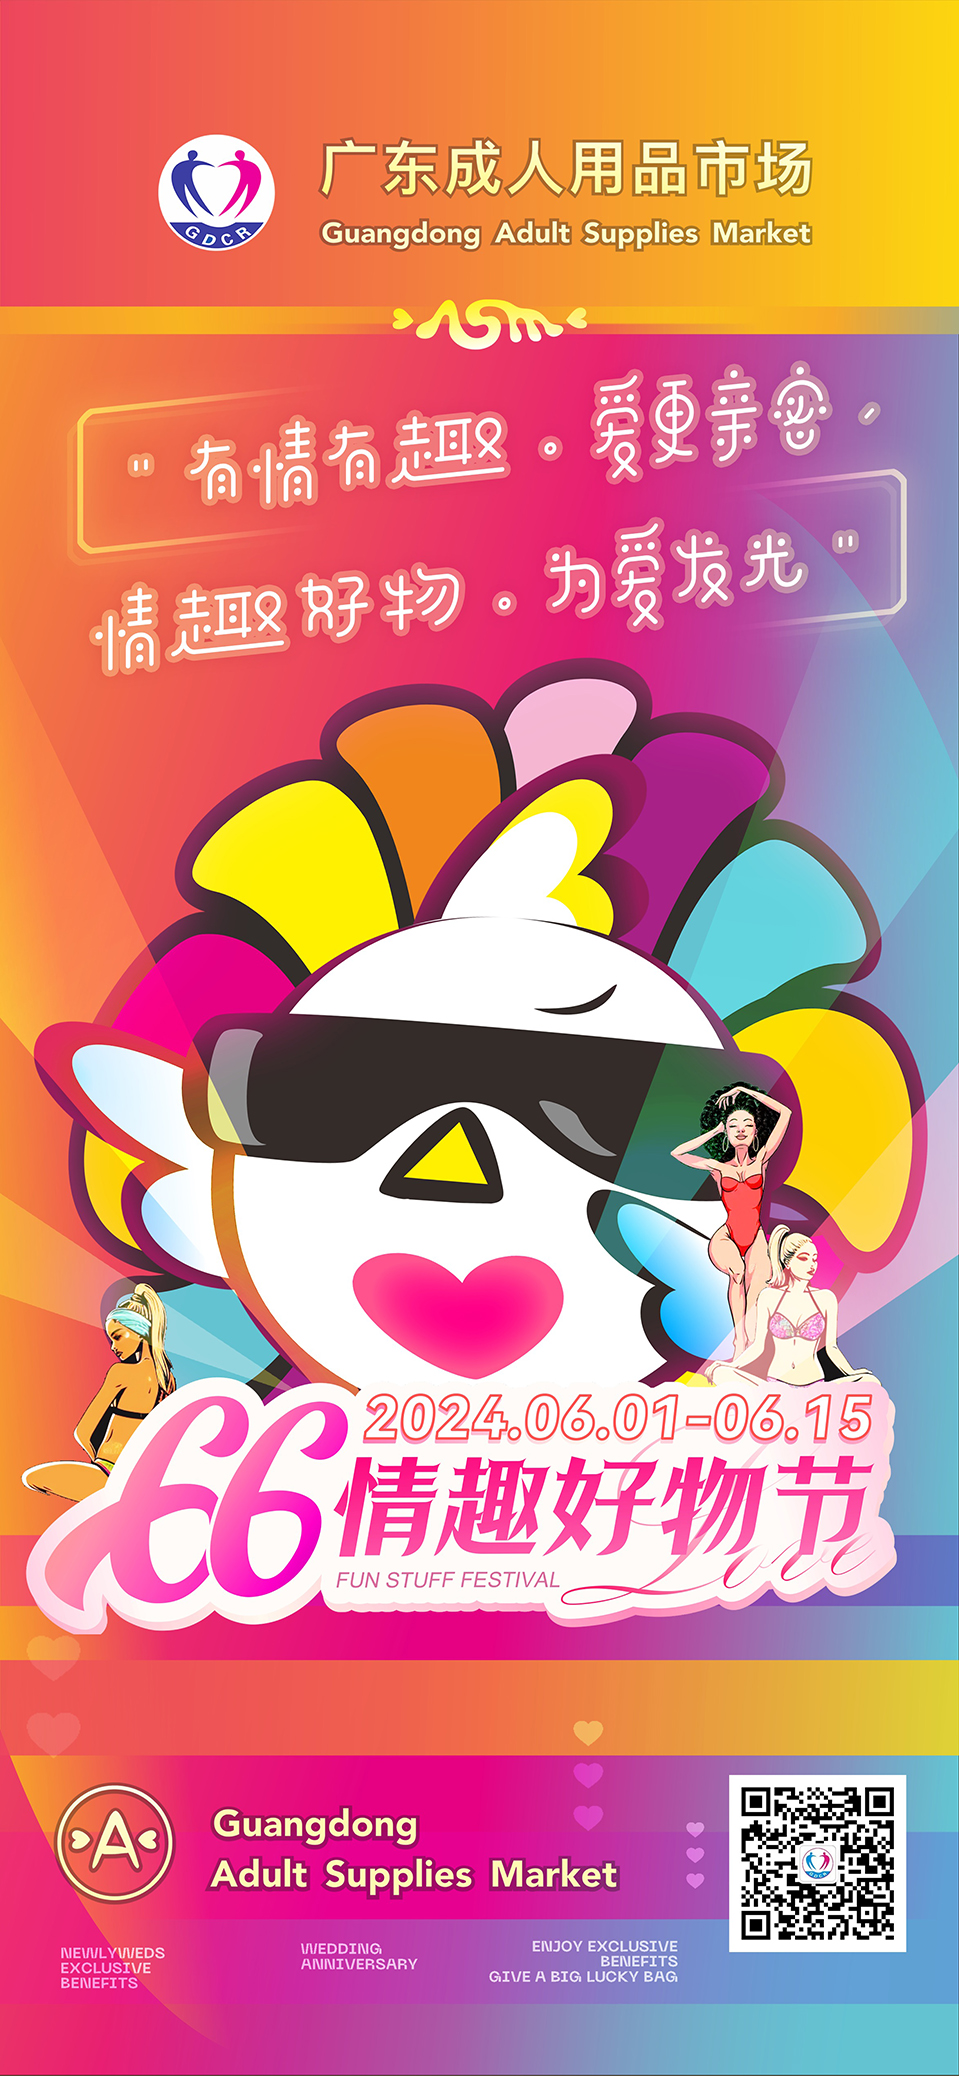 广东成人用品市场第五届“66情趣好物节”欢乐启幕(图1)